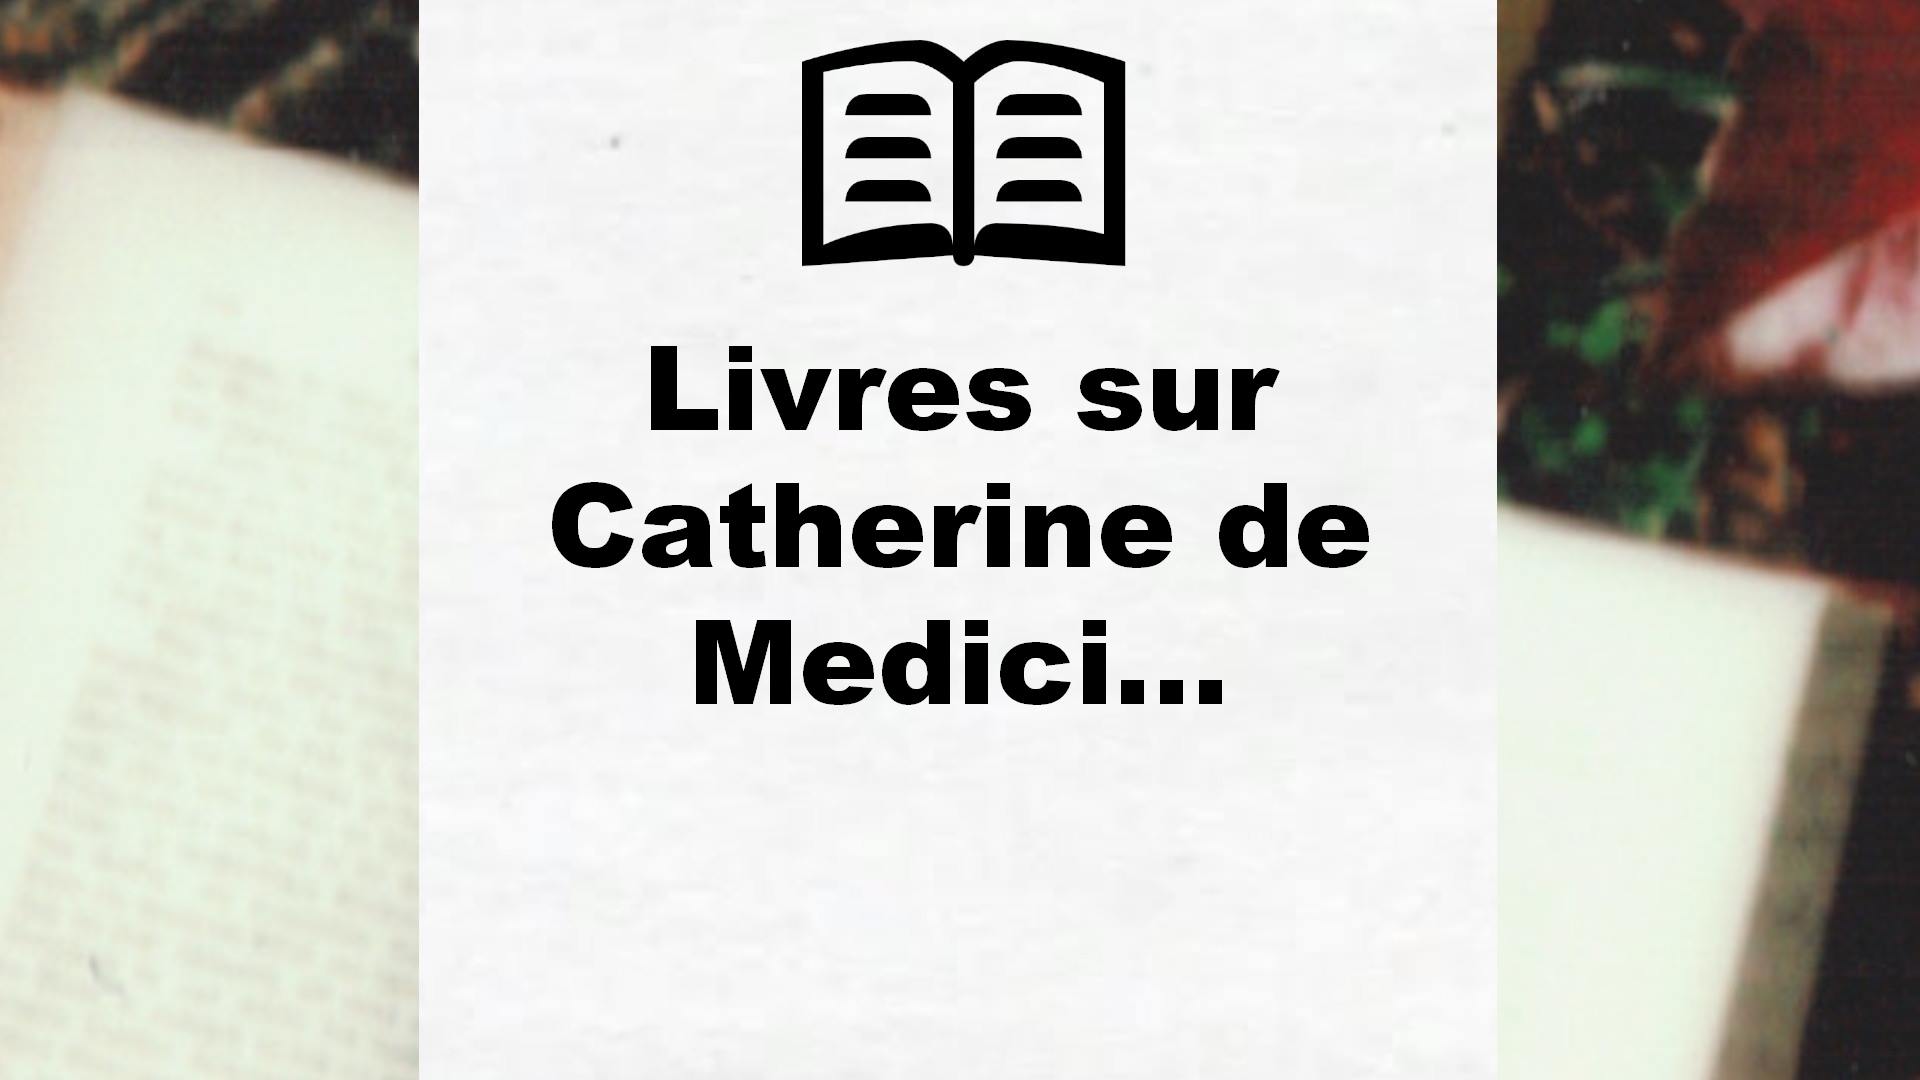 Livres sur Catherine de Medicis